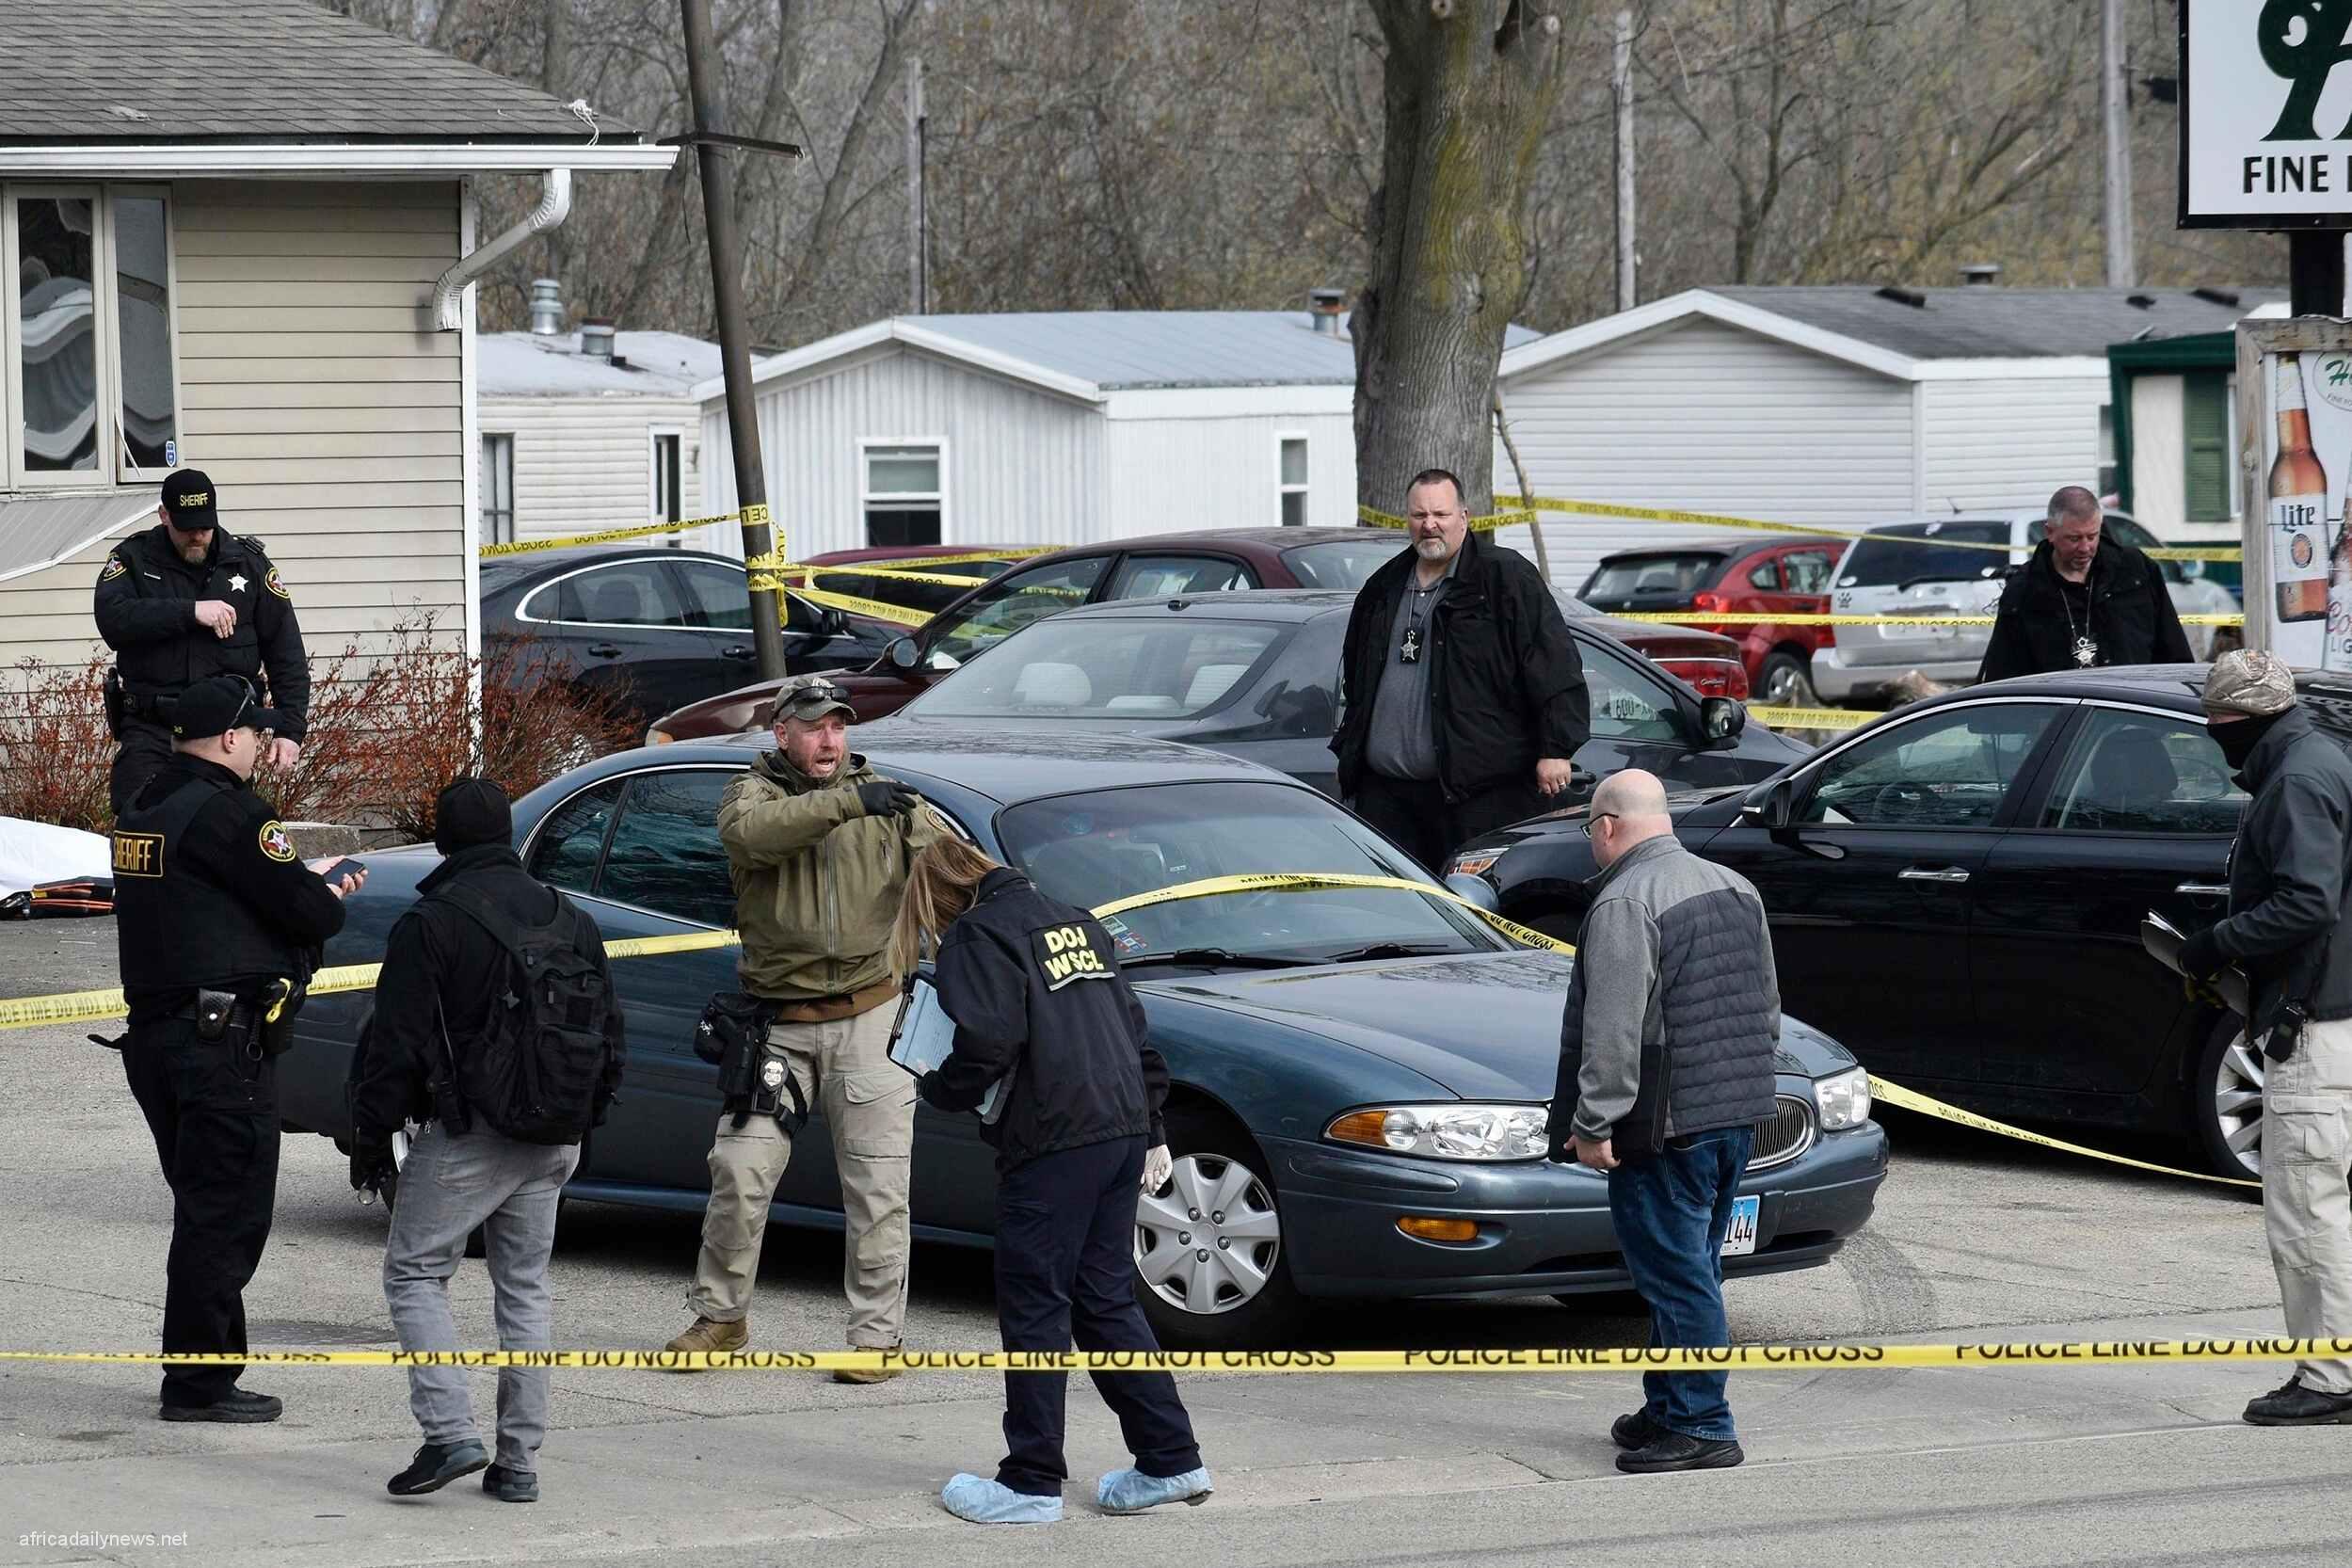 Over Ten Dead In Weekend Shootings Across US - Report